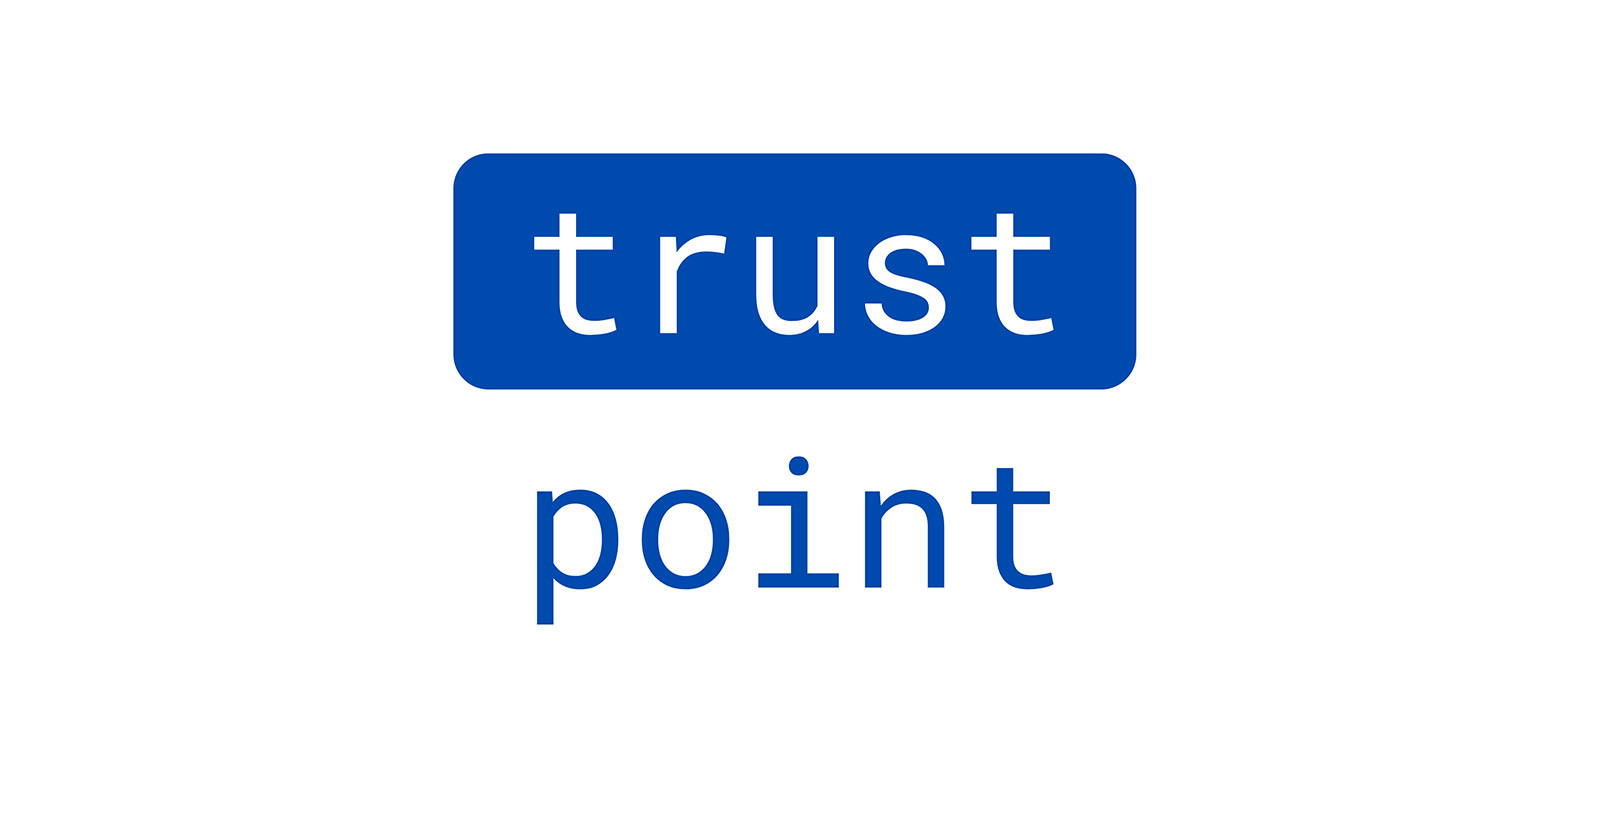 Trustpoint als Vertrauensanker für industrielle Umgebungen